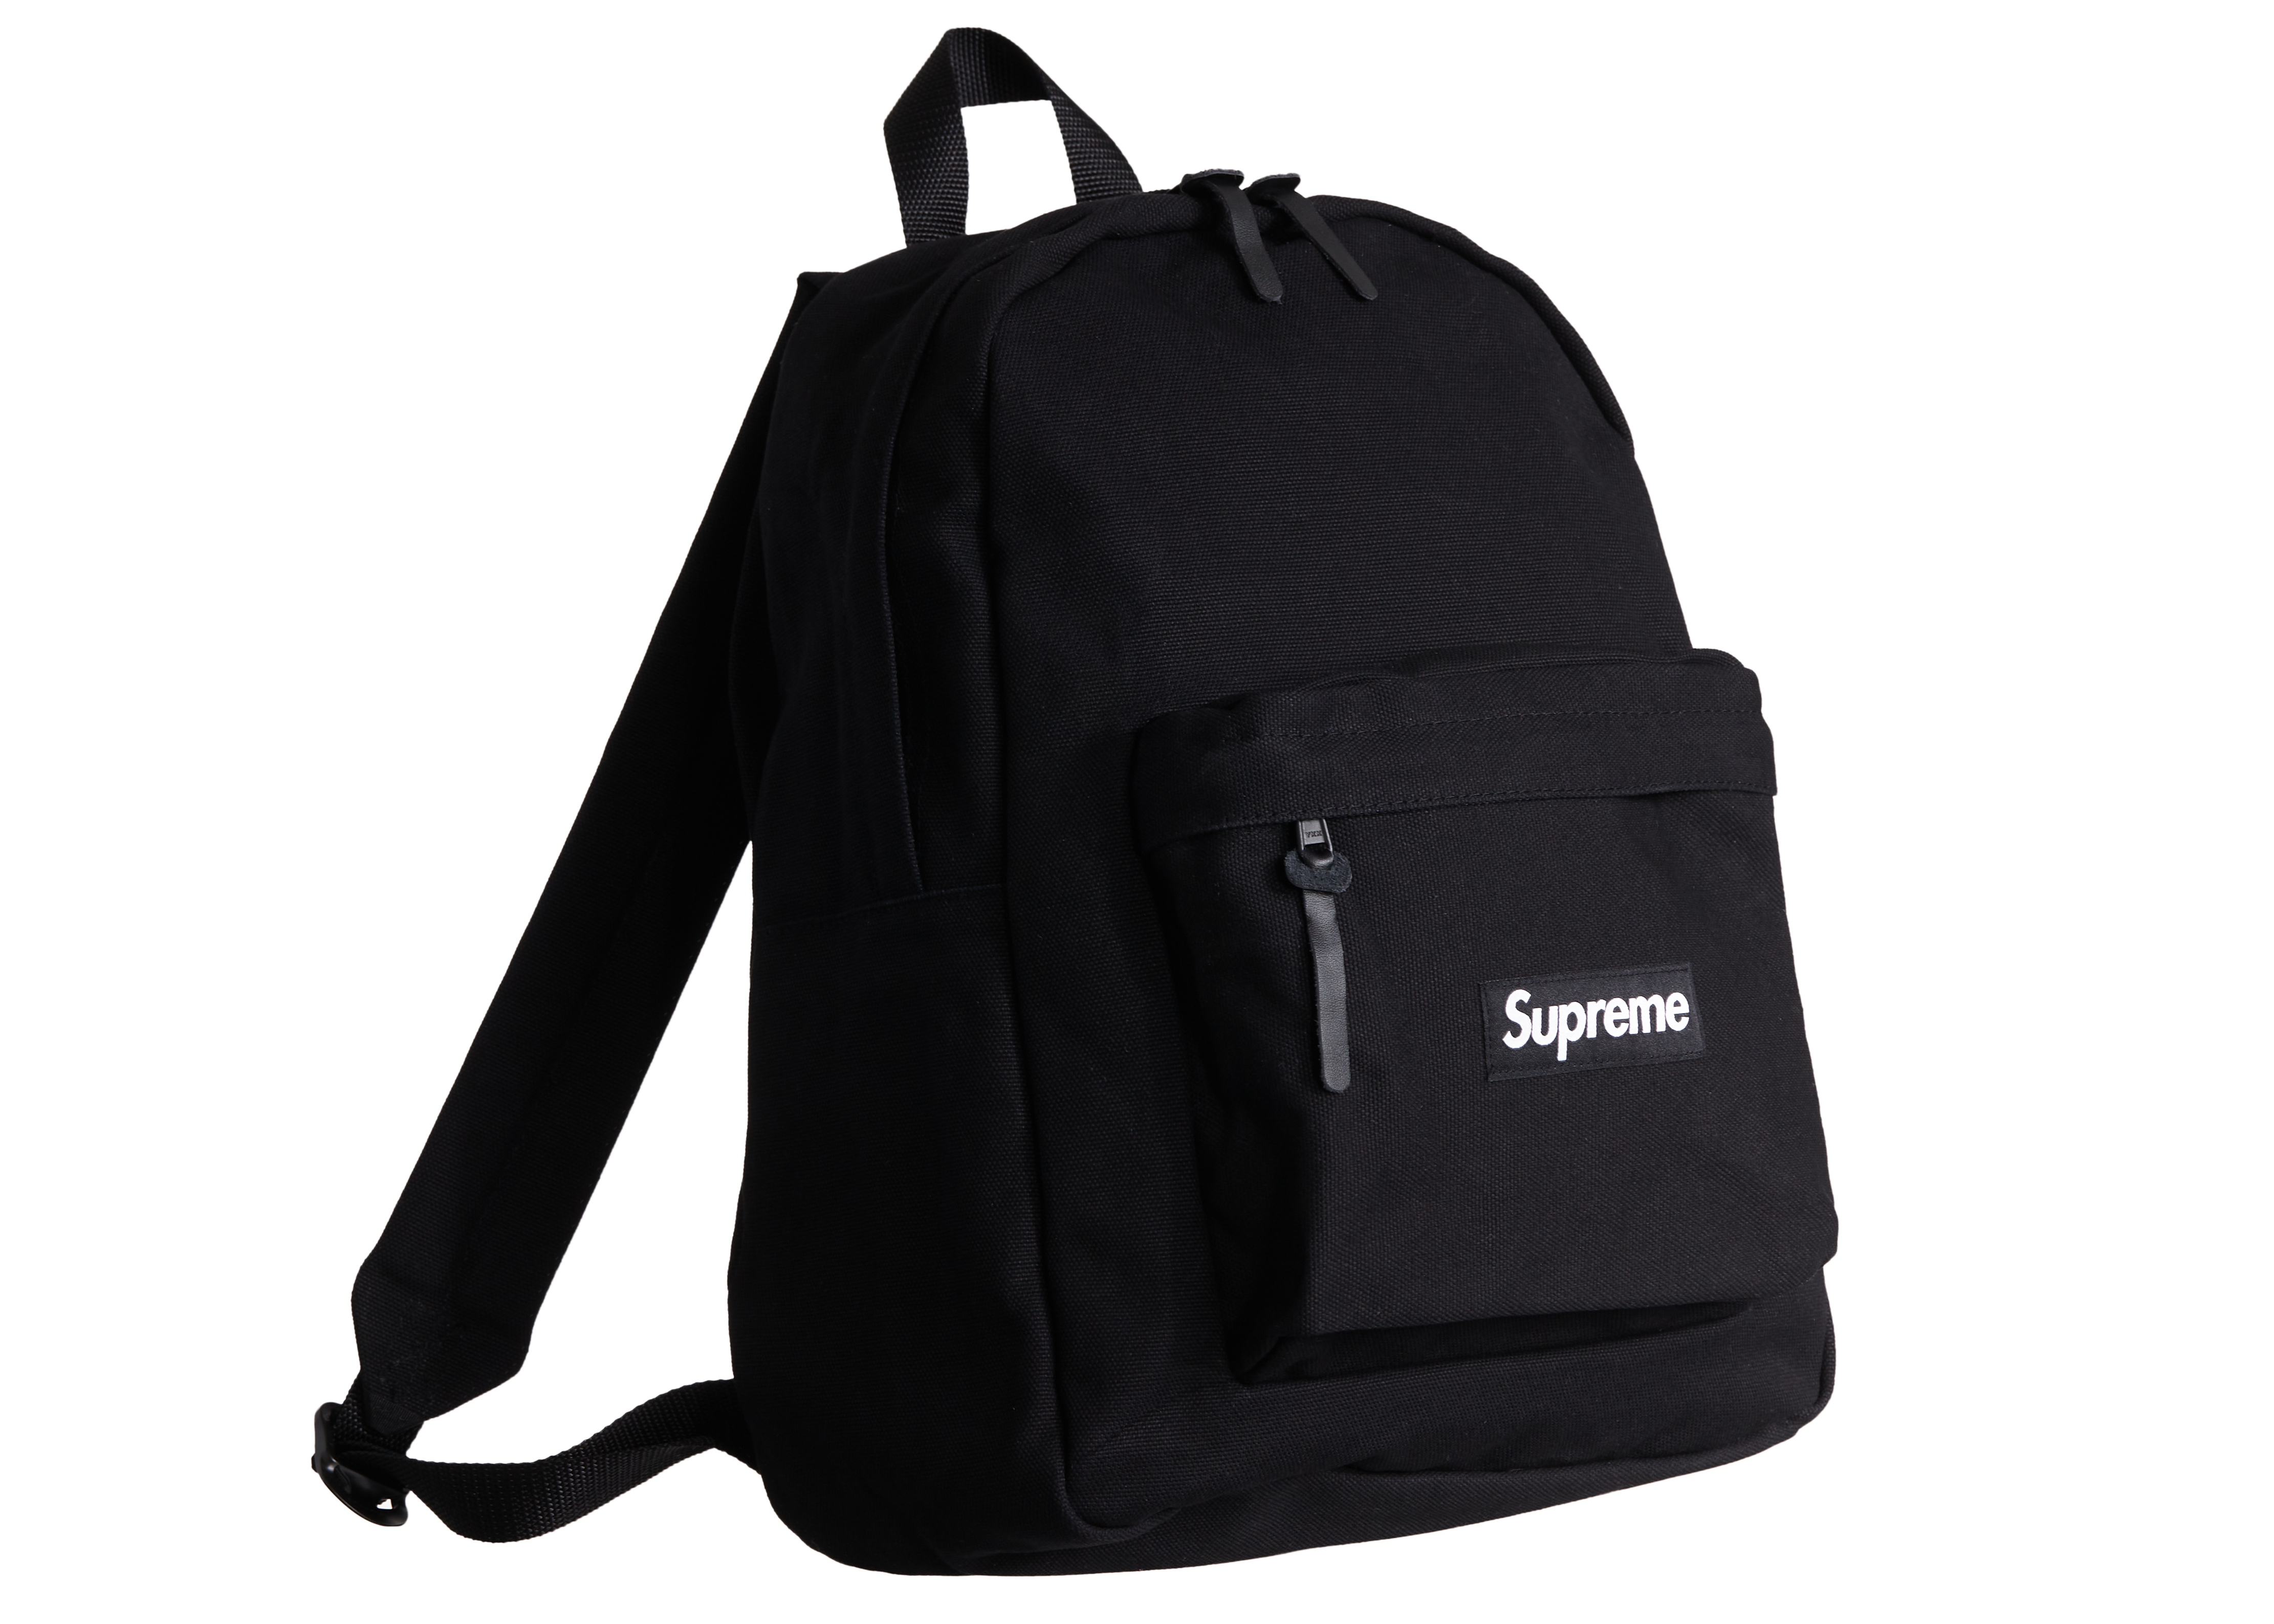 Supreme Canvas Backpack Black - Novelship